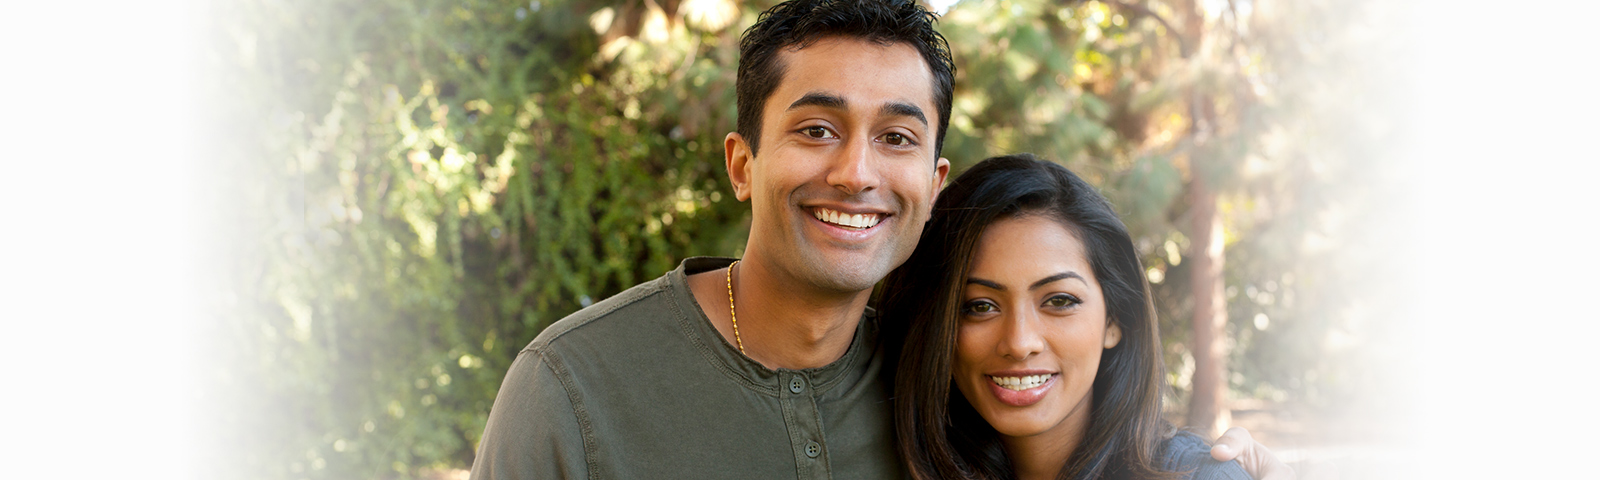 dating indo american crearea propriului site de dating